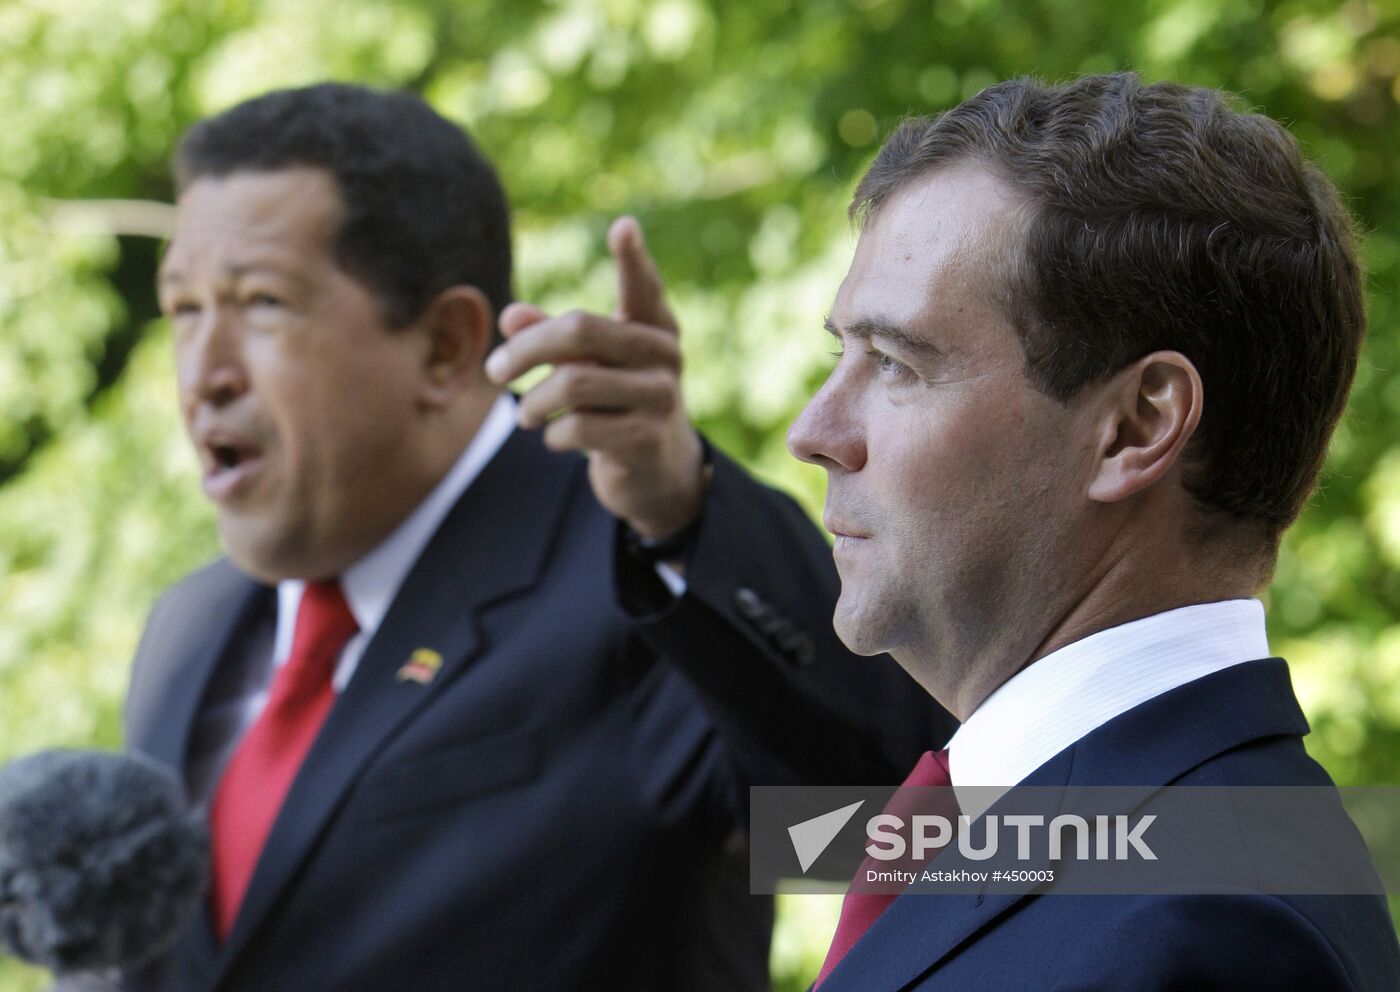 Dmitry Medvedev, Hugo Chávez